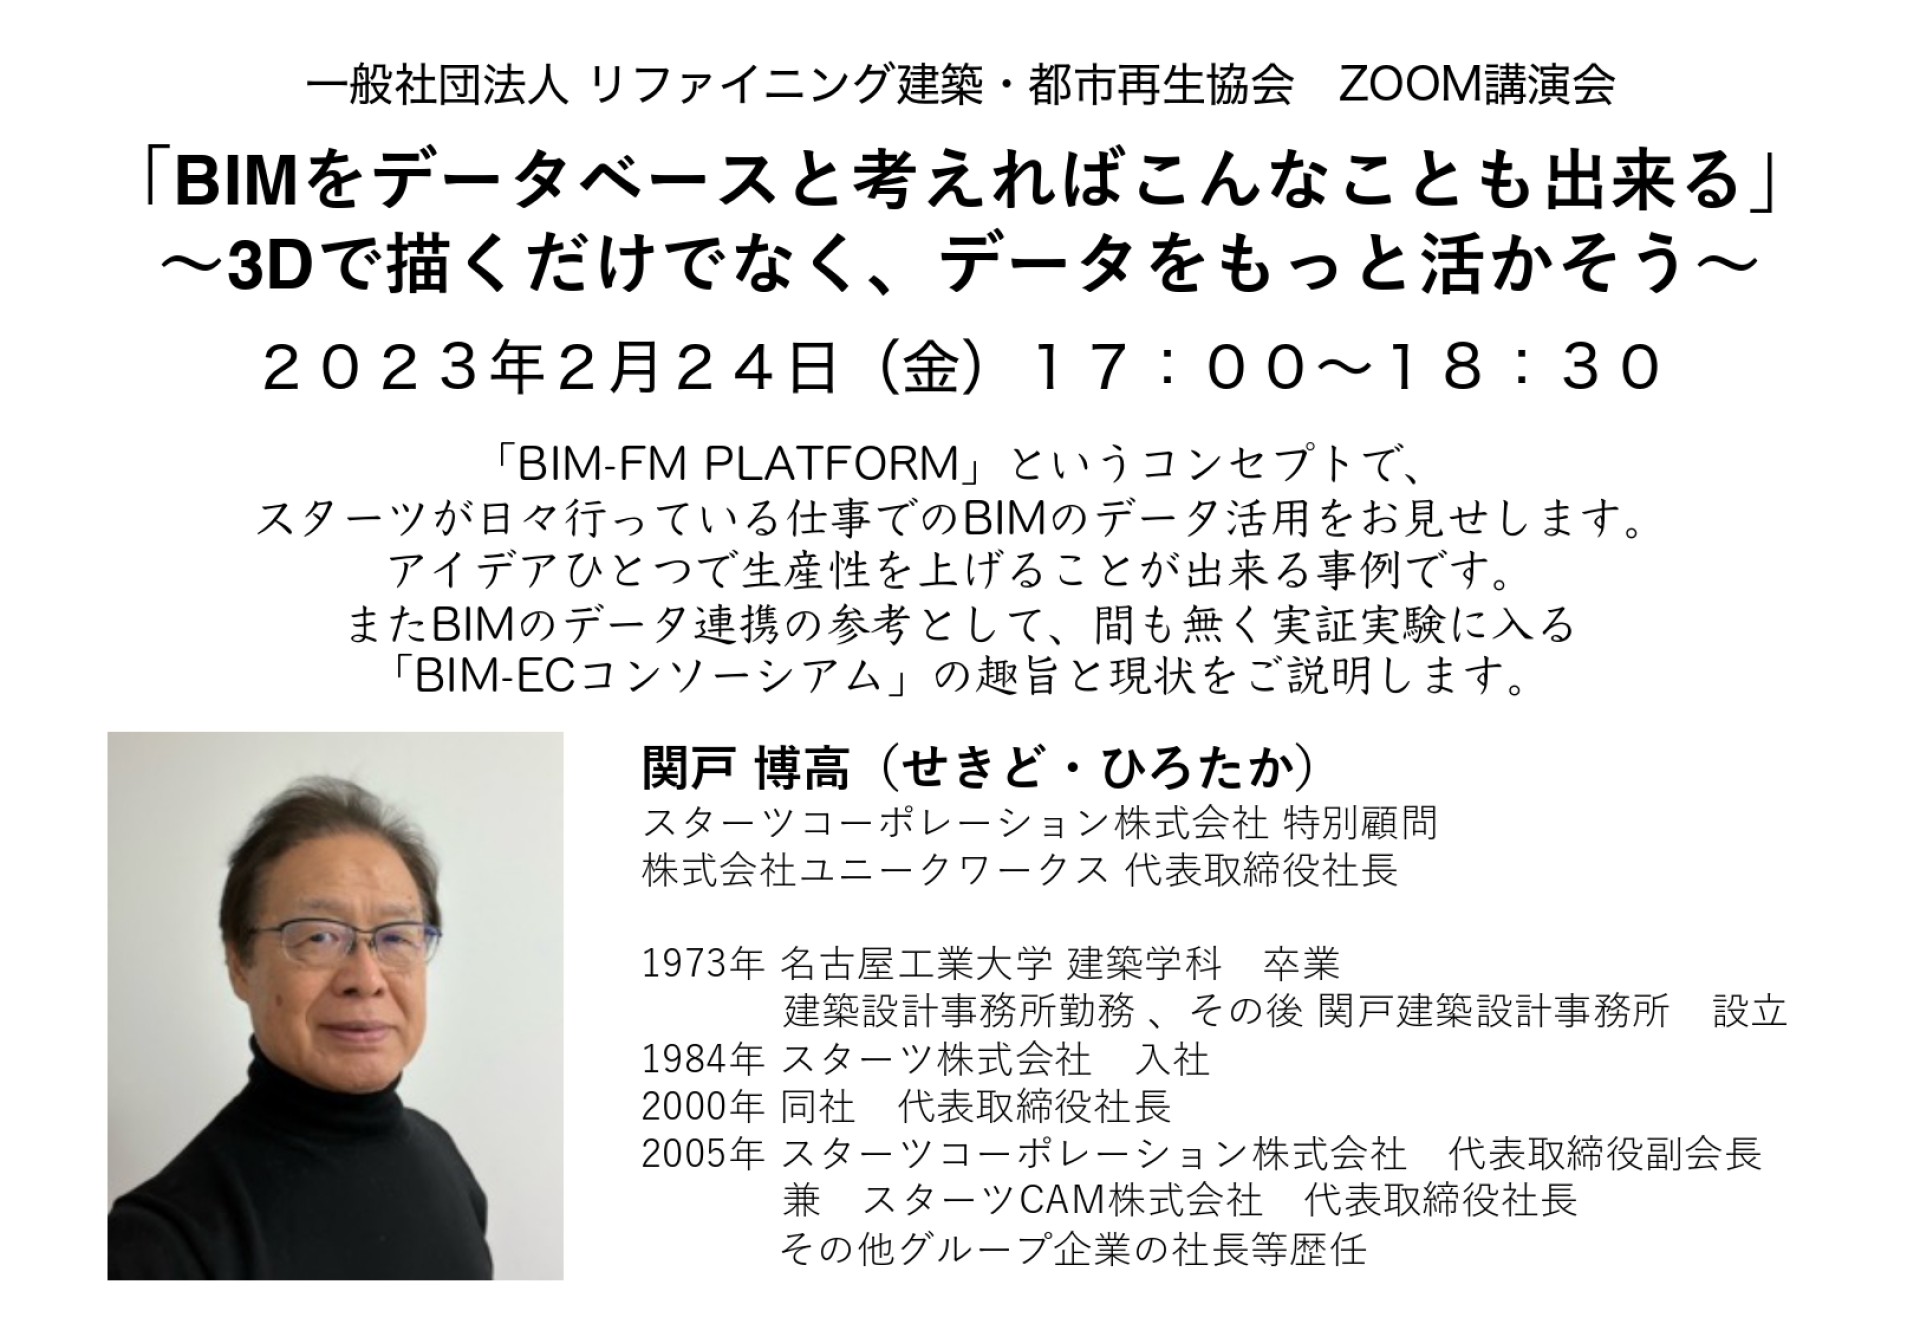 講演会開催のお知らせ、関戸博高先生「BIMをデータベースと考えればこんなことも出来る」 〜3Dで描くだけでなく、データをもっと活かそう〜